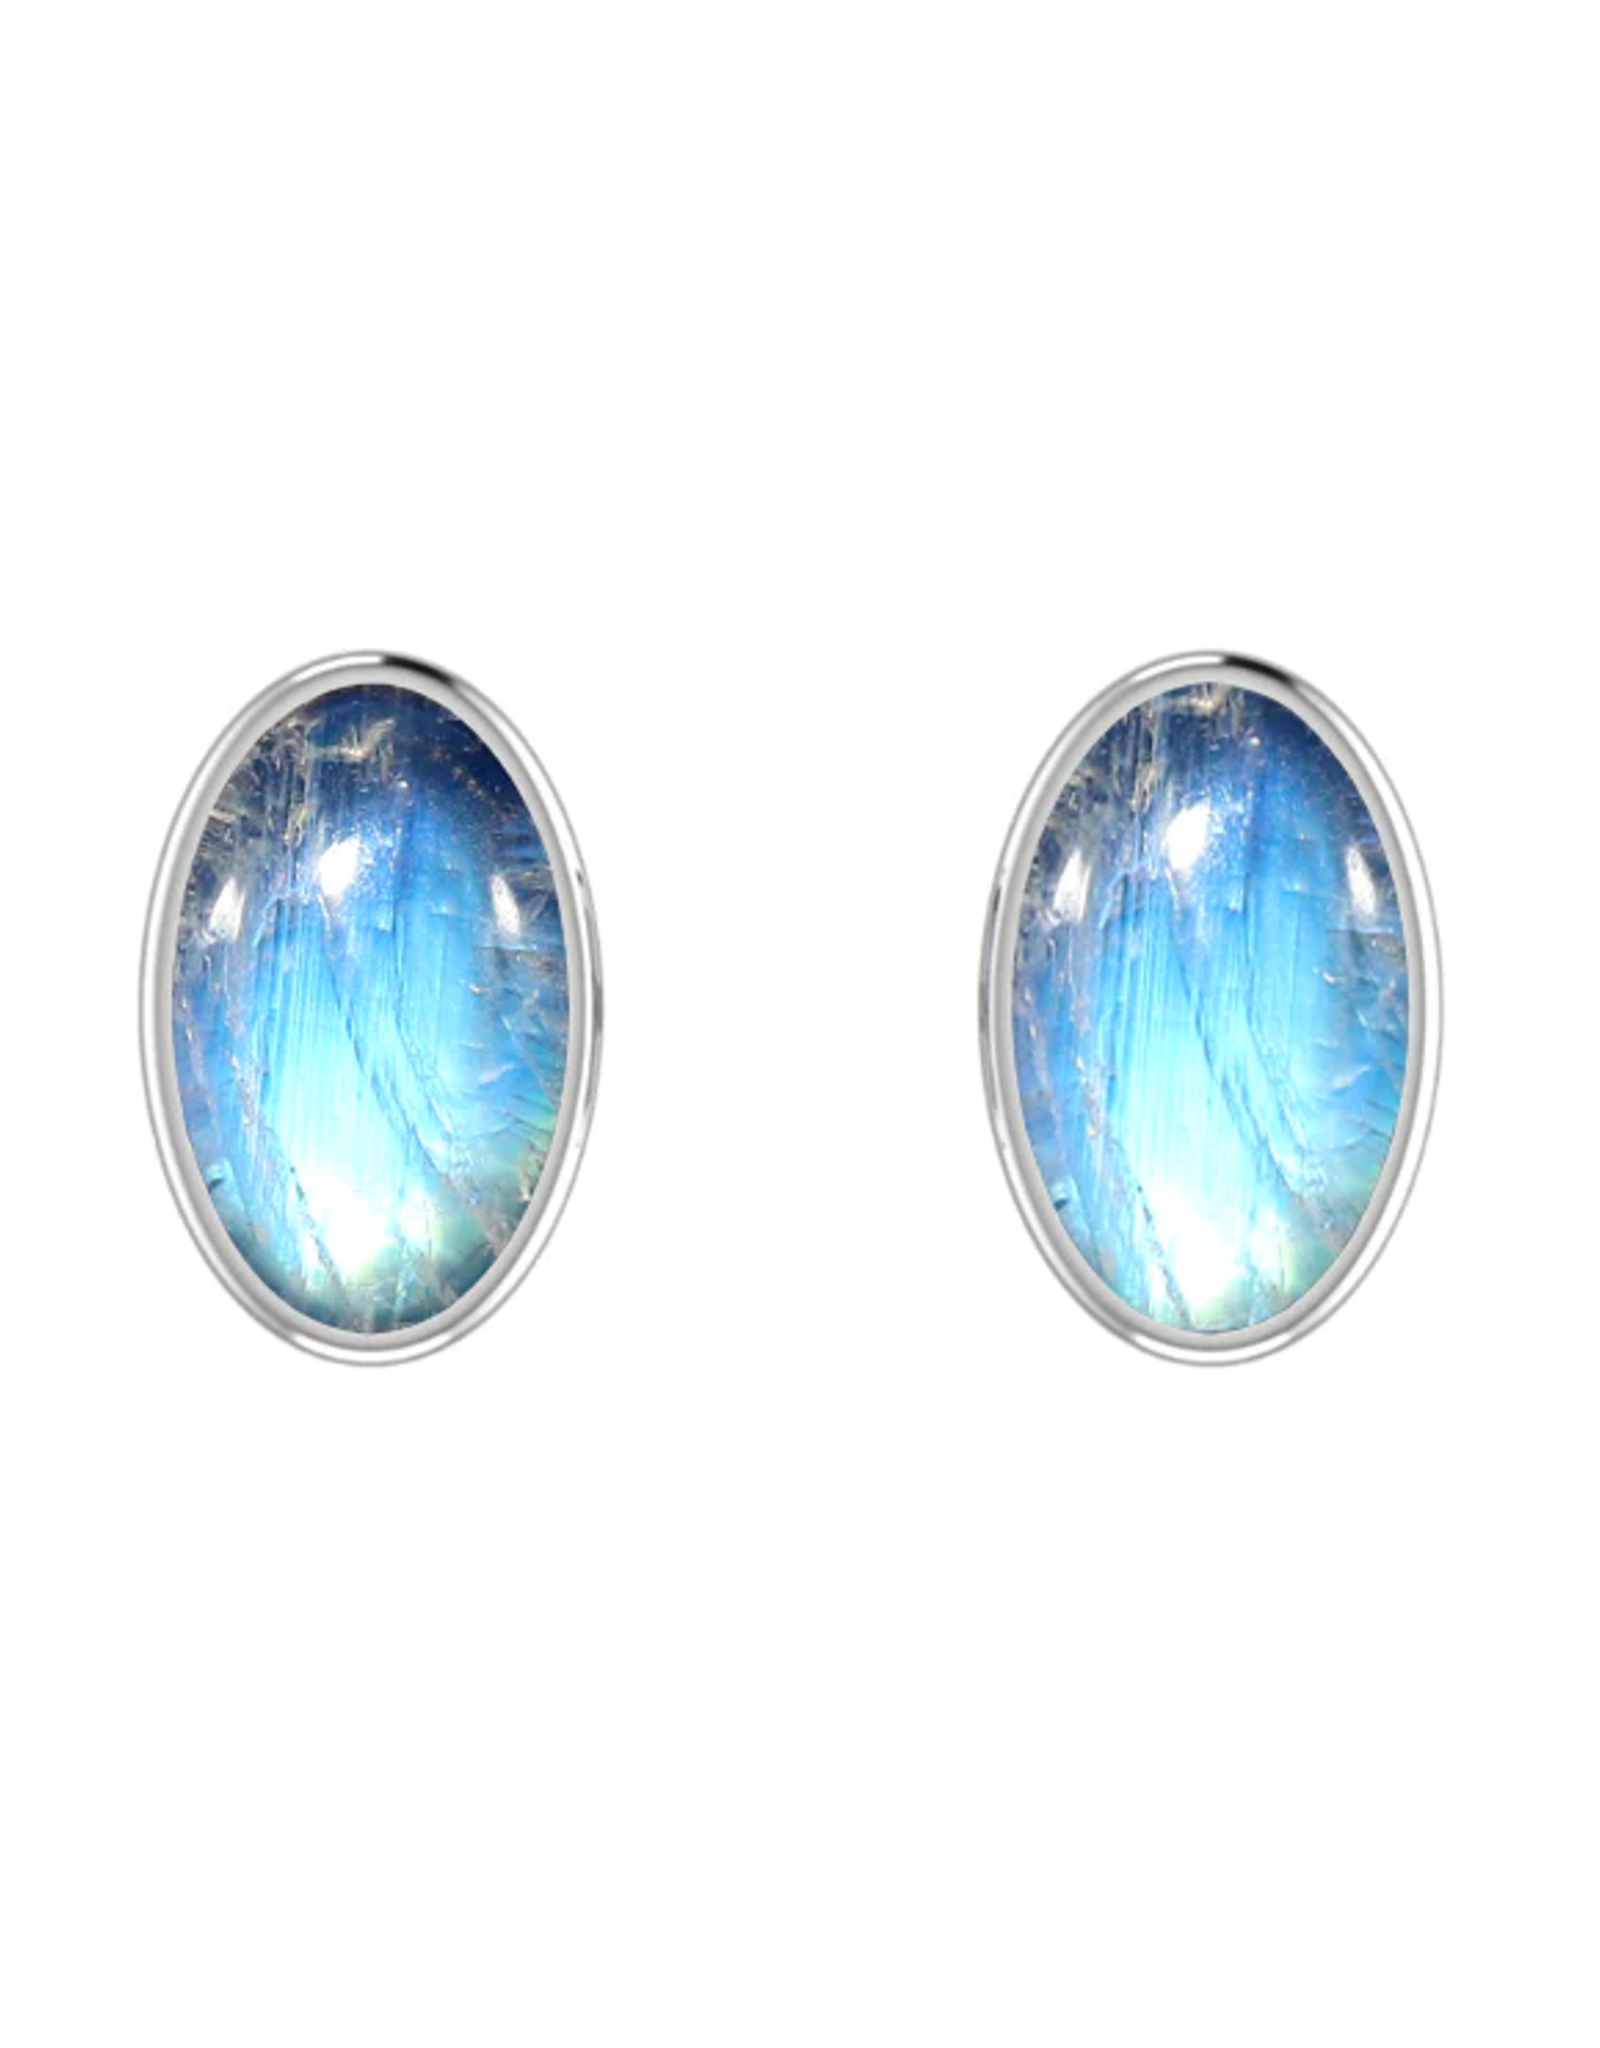 Rainbow Moonstone Stud Earrings Polished - Large